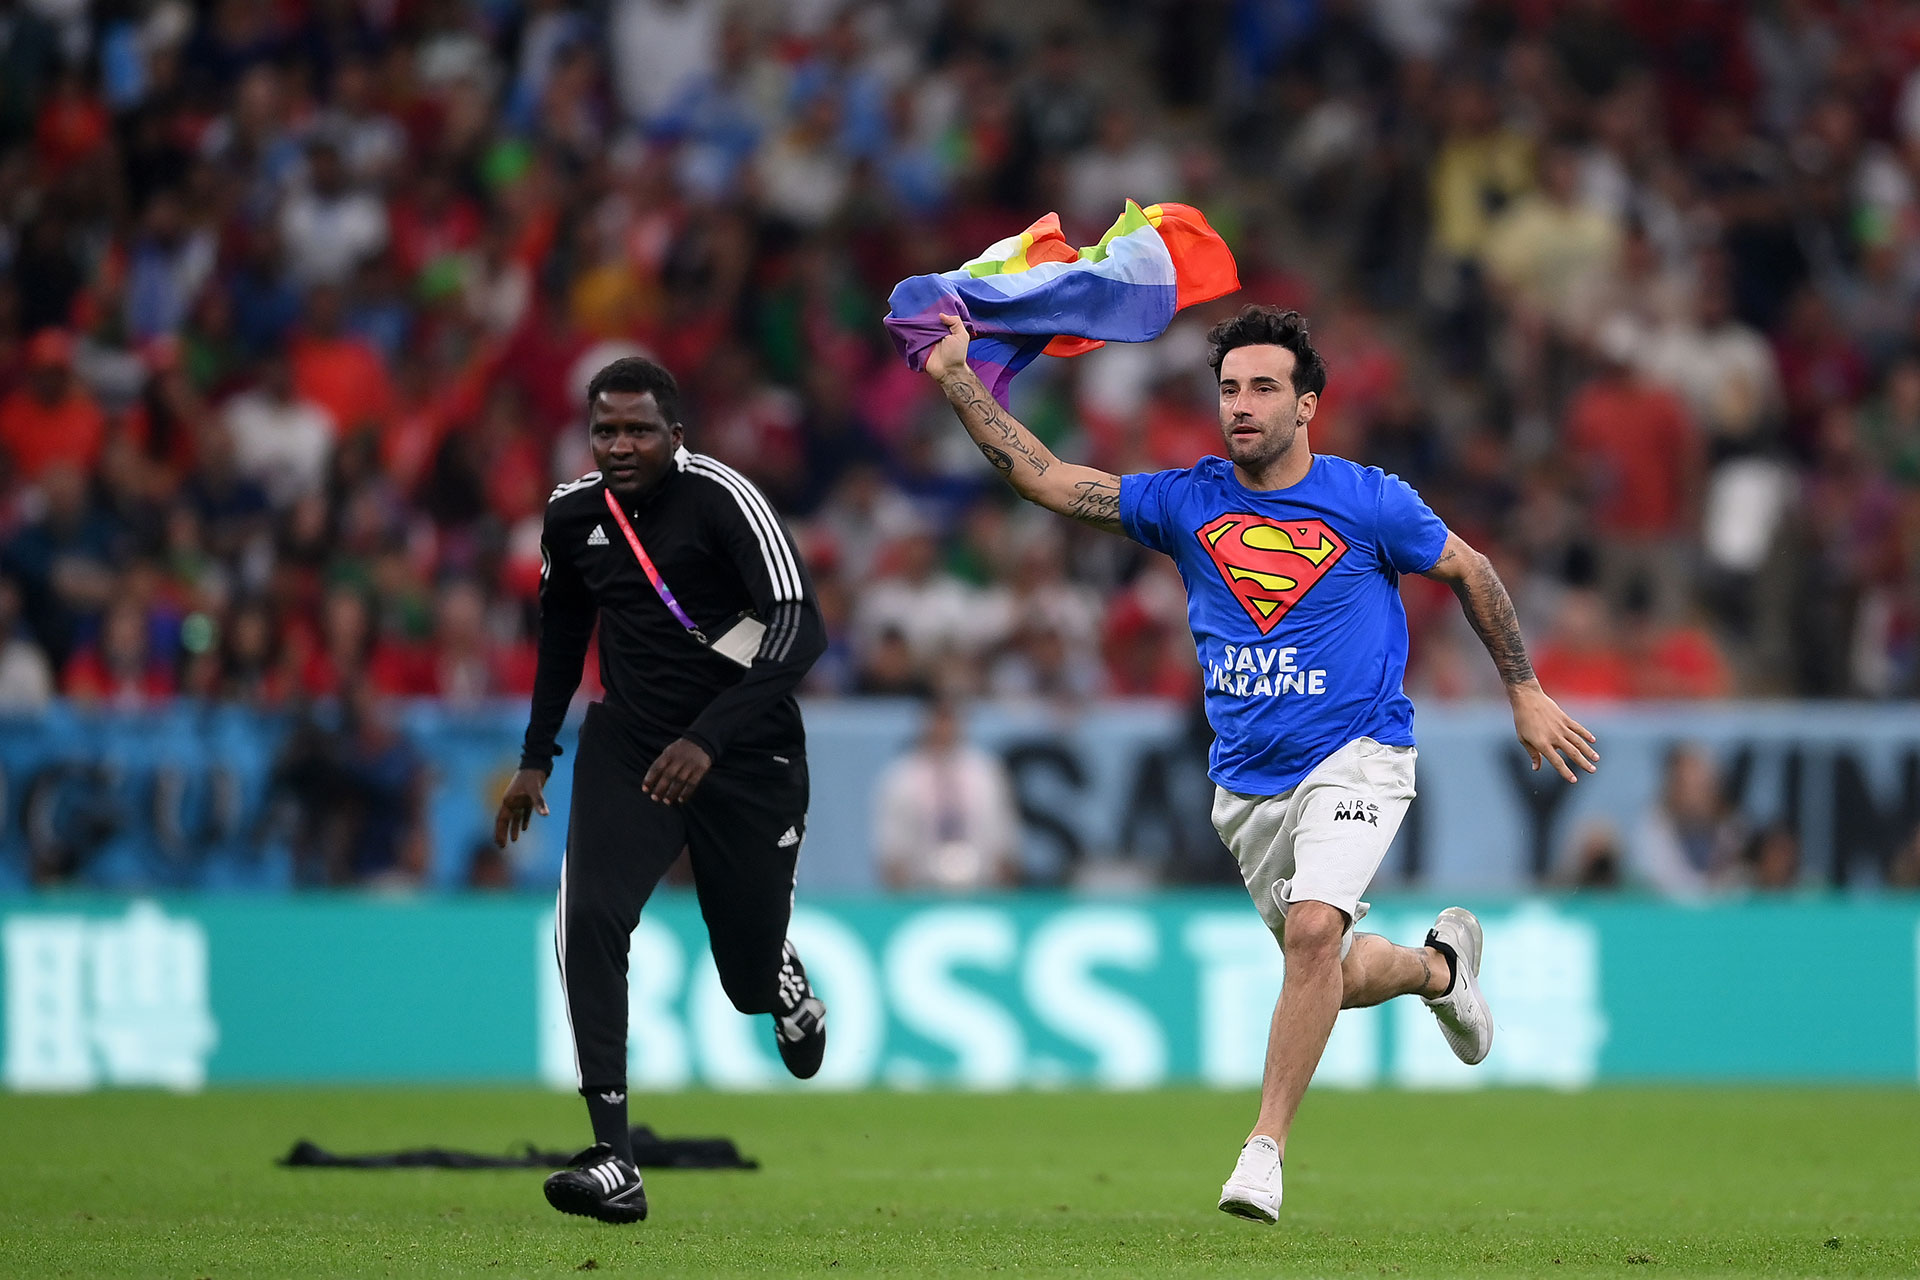 Un espectador con una remera con la frase "Salven a Ucrania" y una bandera con los colores de la comunidad LGBT+ invade el campo de juego durante el partido entre Portugal y Uruguay en la fase de grupos del Mundial de Qatar. 